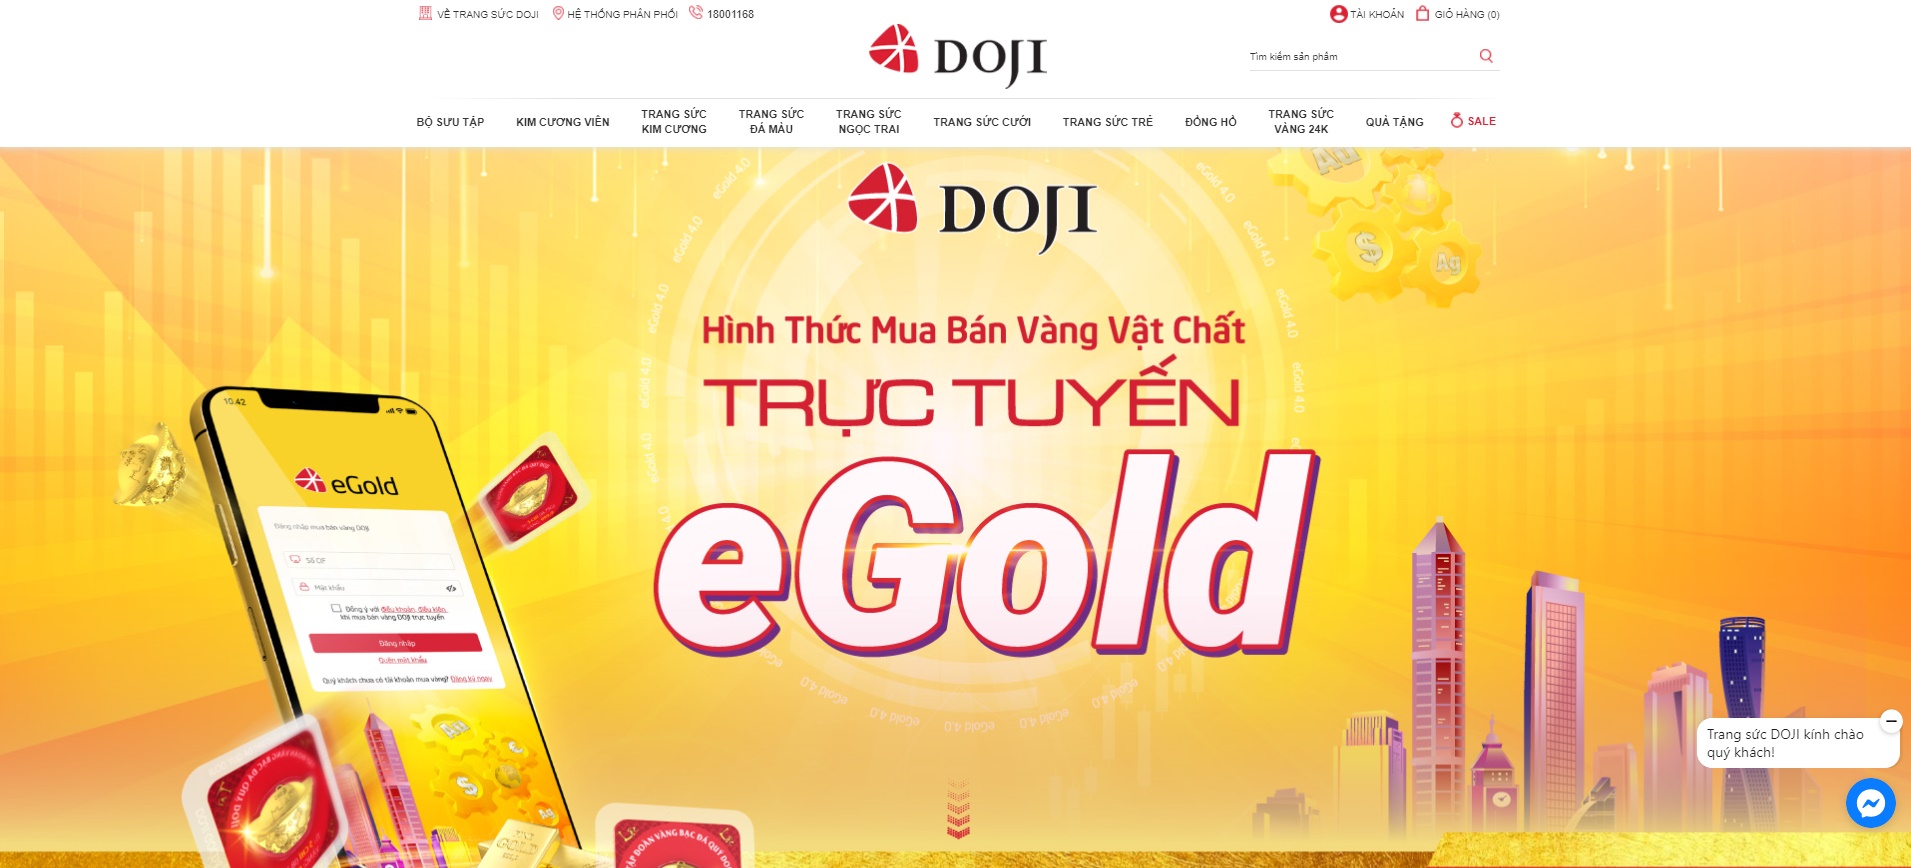 Mùa dịch, cửa hàng vàng lớn từ DOJI, Bảo Tín Minh Châu, PNJ,... đủ mẫu đa dạng phục vụ khách mua vàng online lấy vía Thần Tài tại nhà - Ảnh 2.